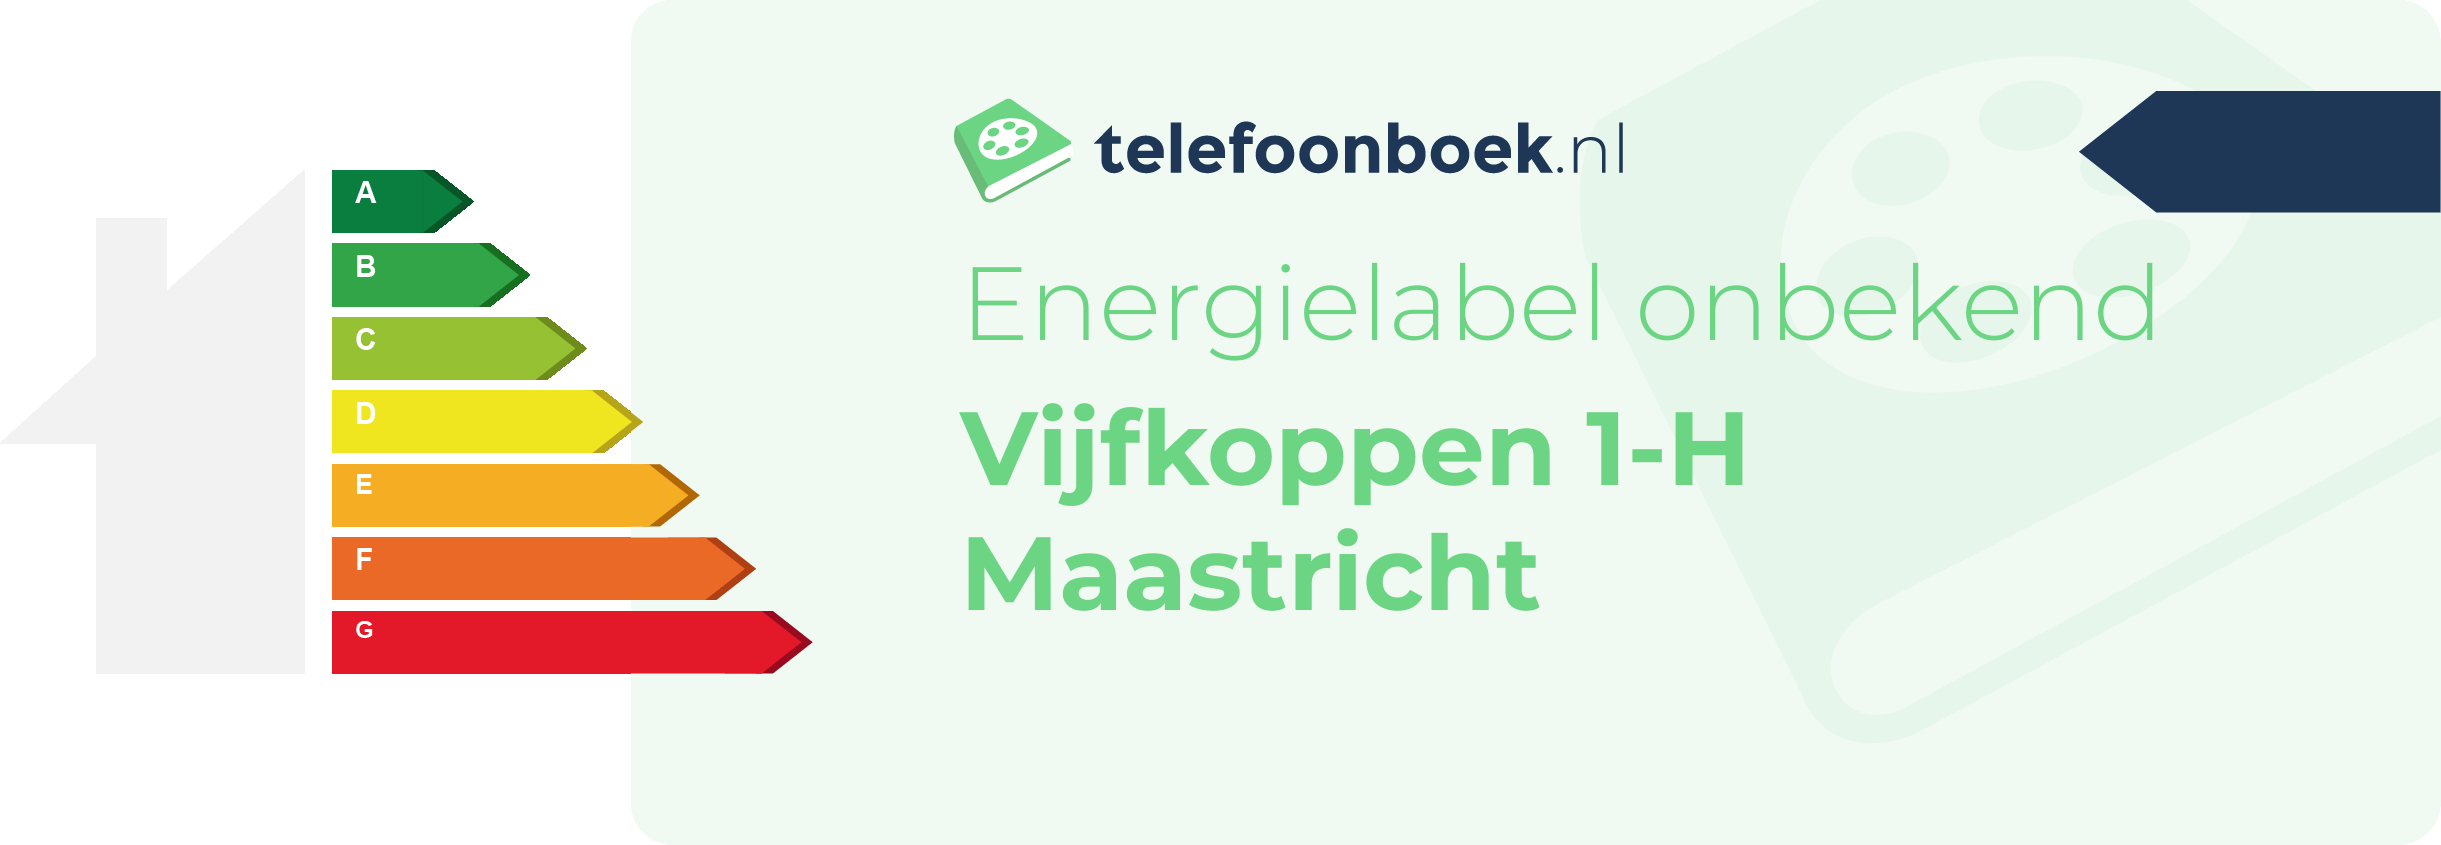 Energielabel Vijfkoppen 1-H Maastricht